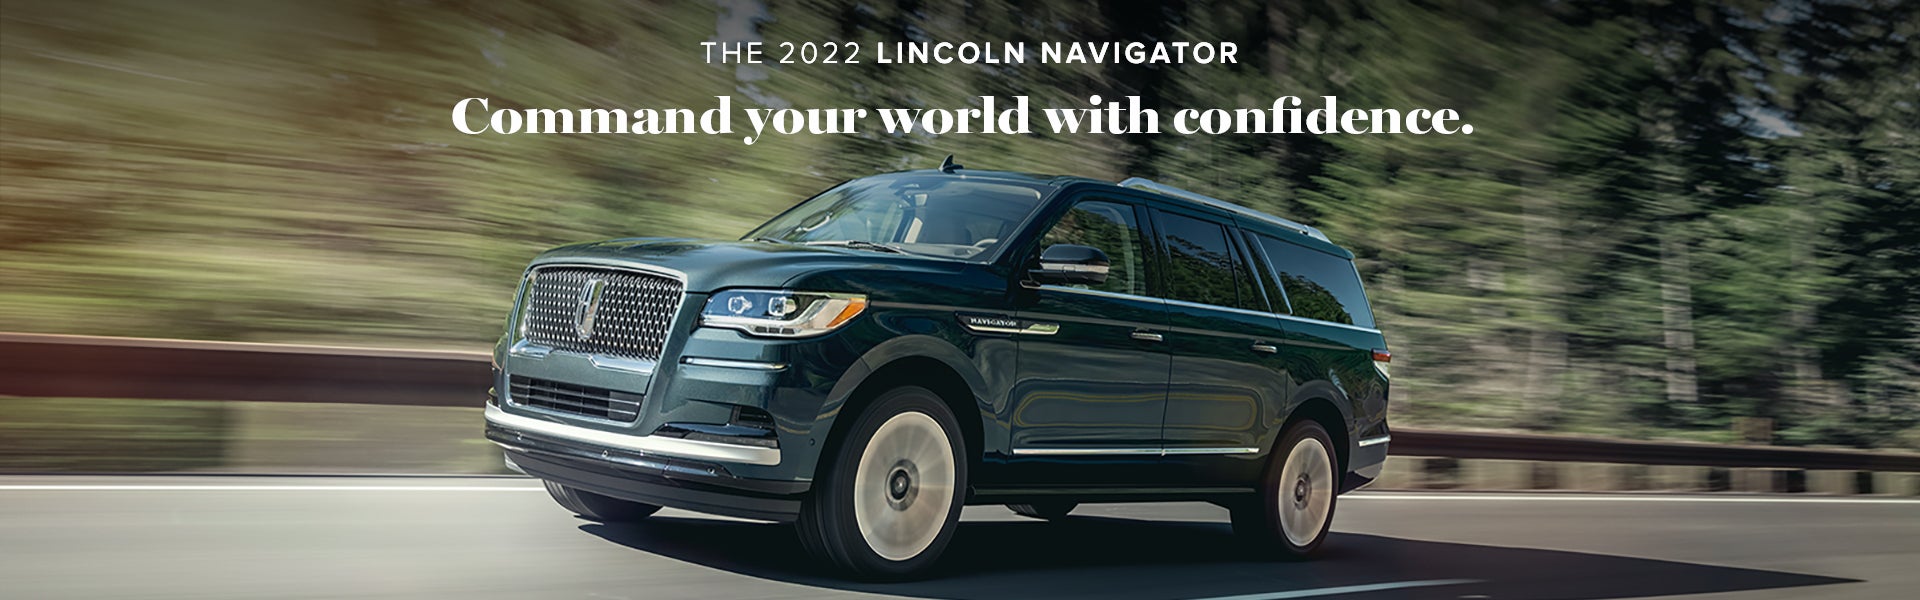 The 2022 Lincoln Navigator